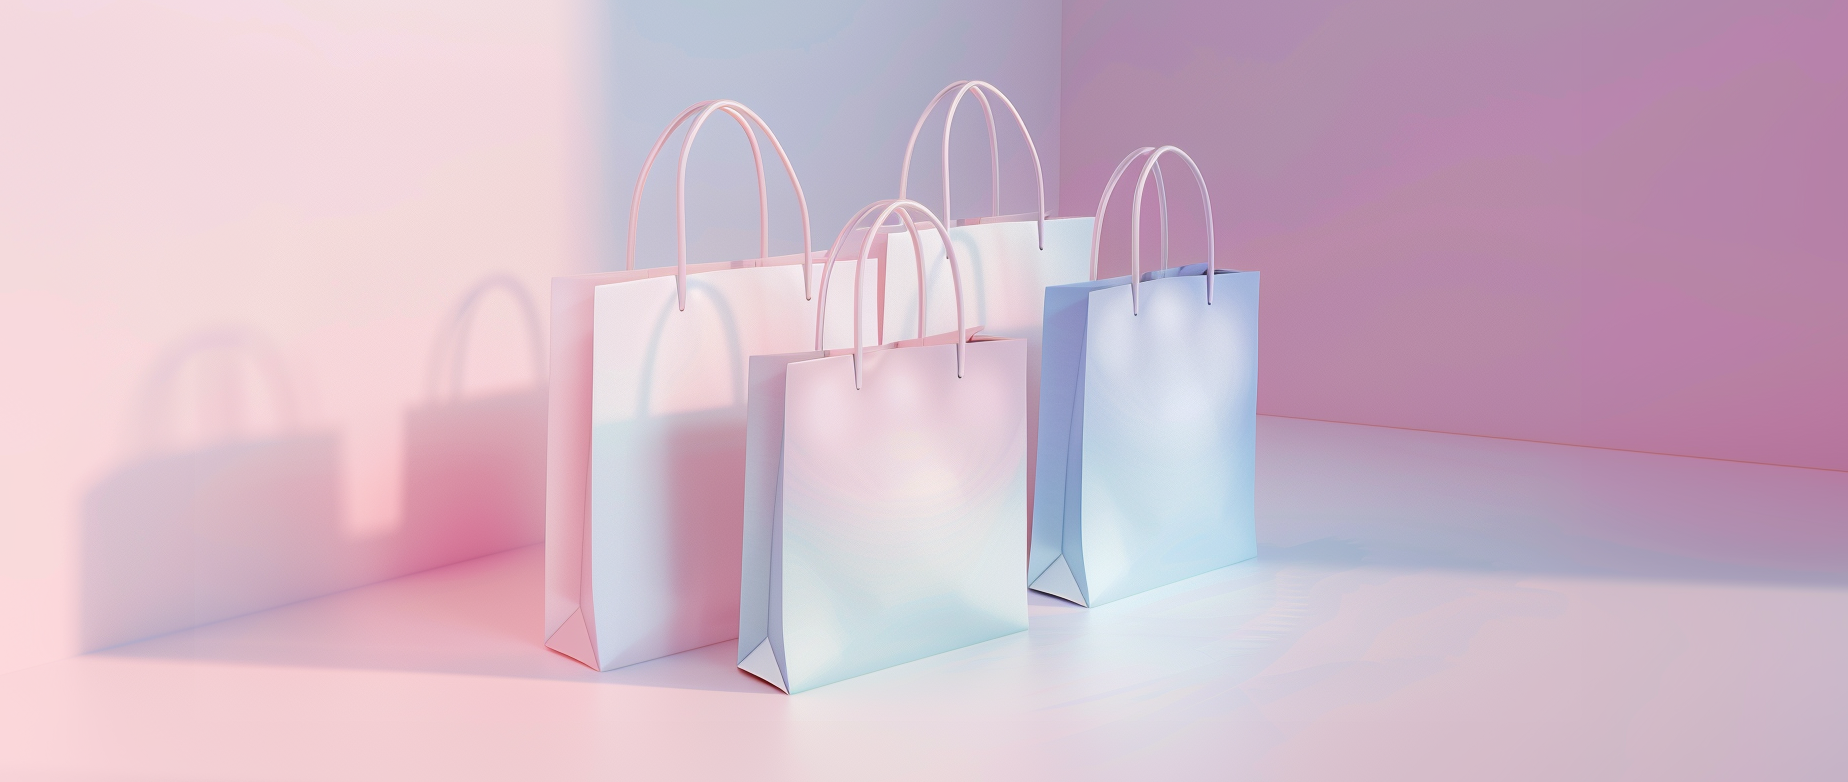 Quatre sacs à provisions blancs dans un coin éclairé en rose et bleu.